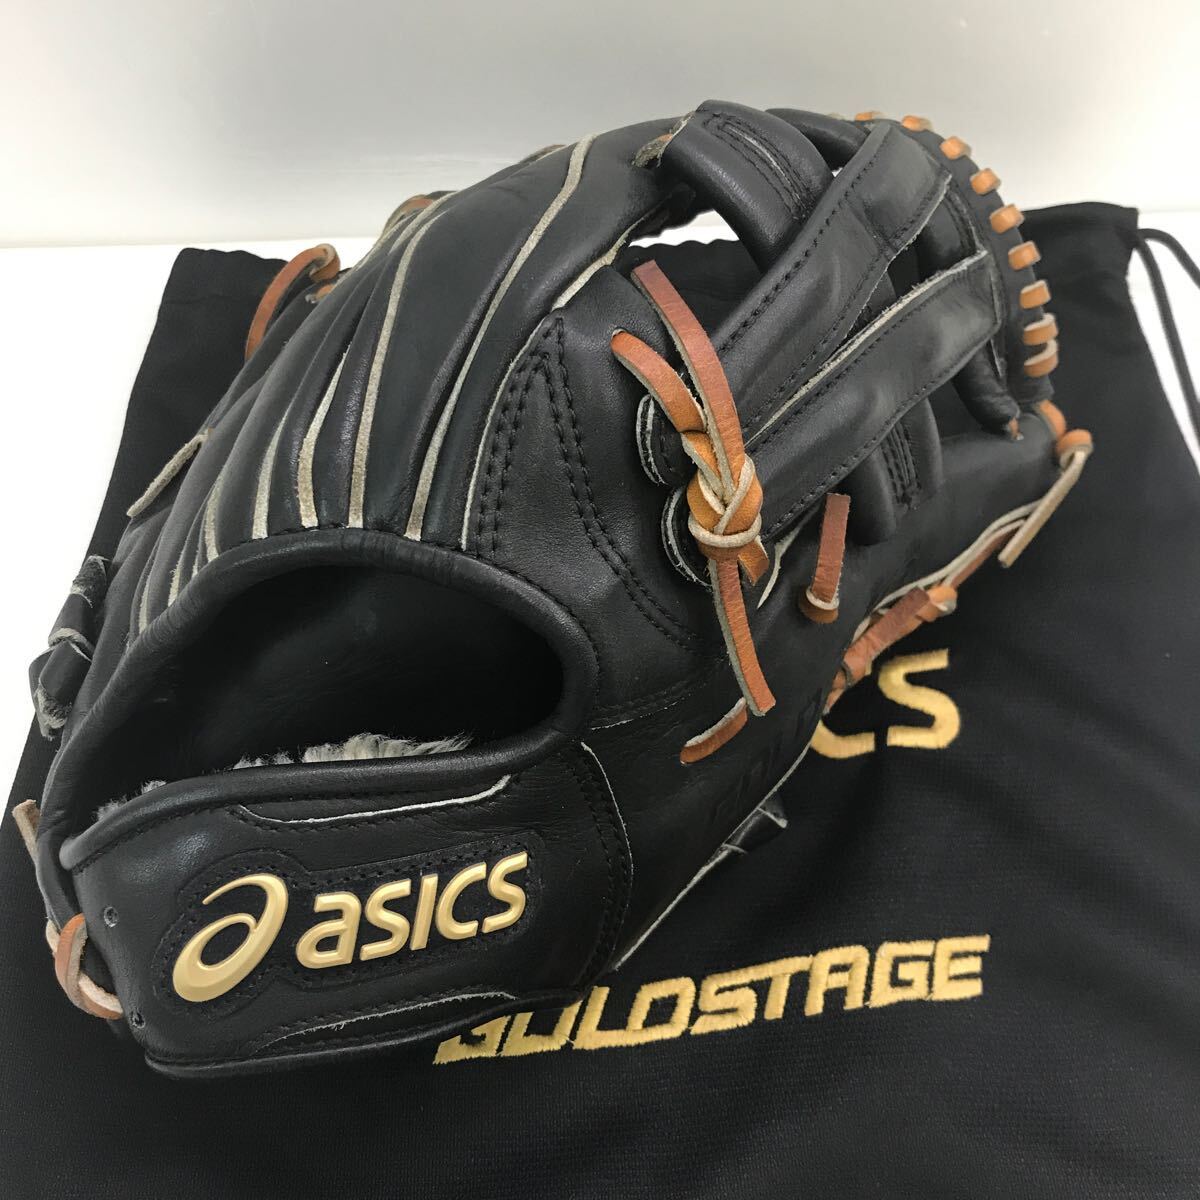 G-9699 アシックス asics ゴールドステージ 軟式 内野手用 BGR5LT グローブ グラブ 野球 中古品 袋付きの画像1